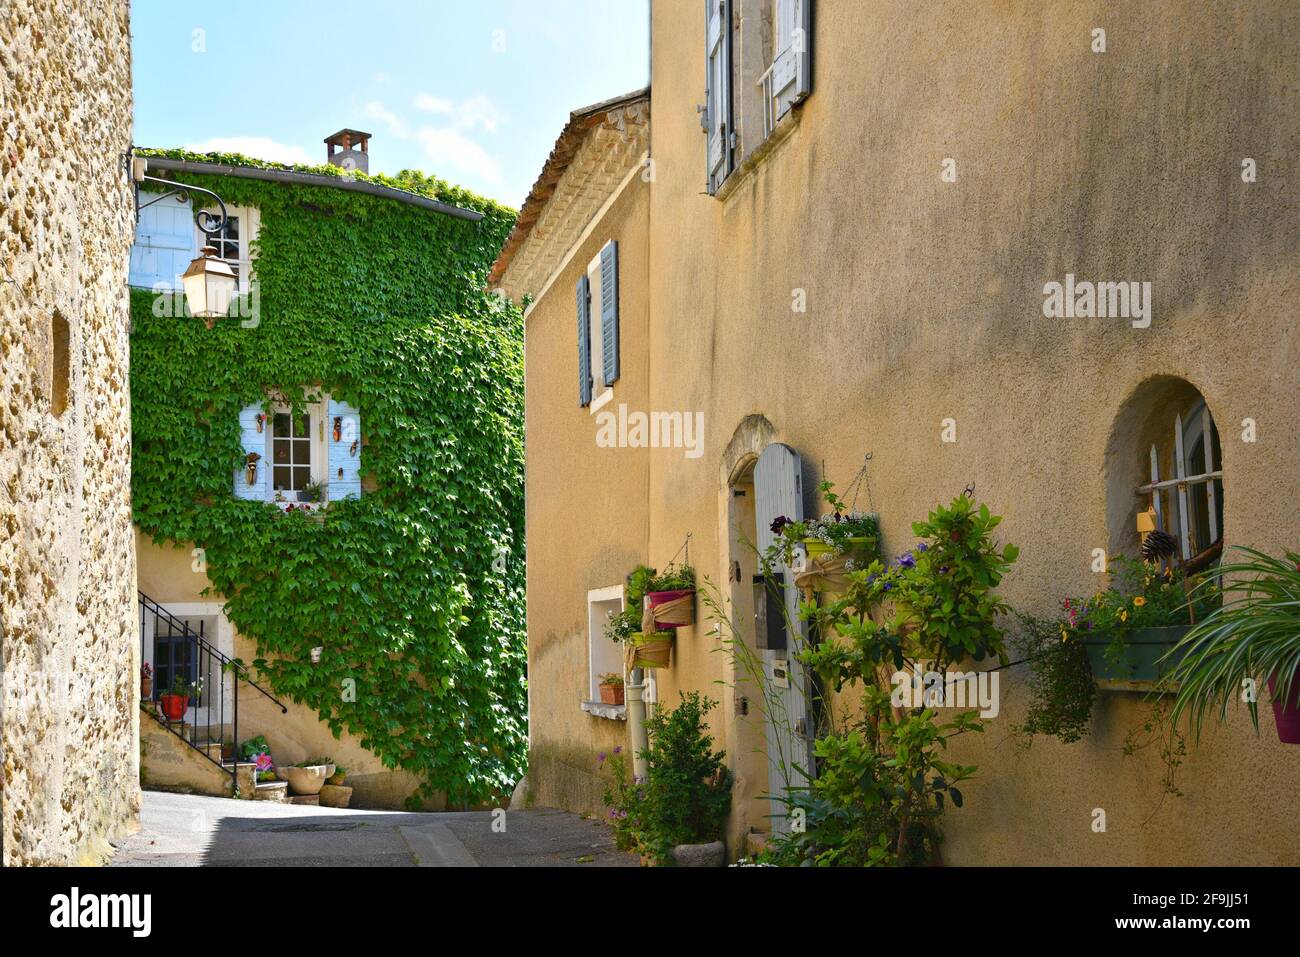 Typische Architektur im Provençal-Stil im malerischen Dorf Lourmarin in Vaucluse, Provence Frankreich. Stockfoto